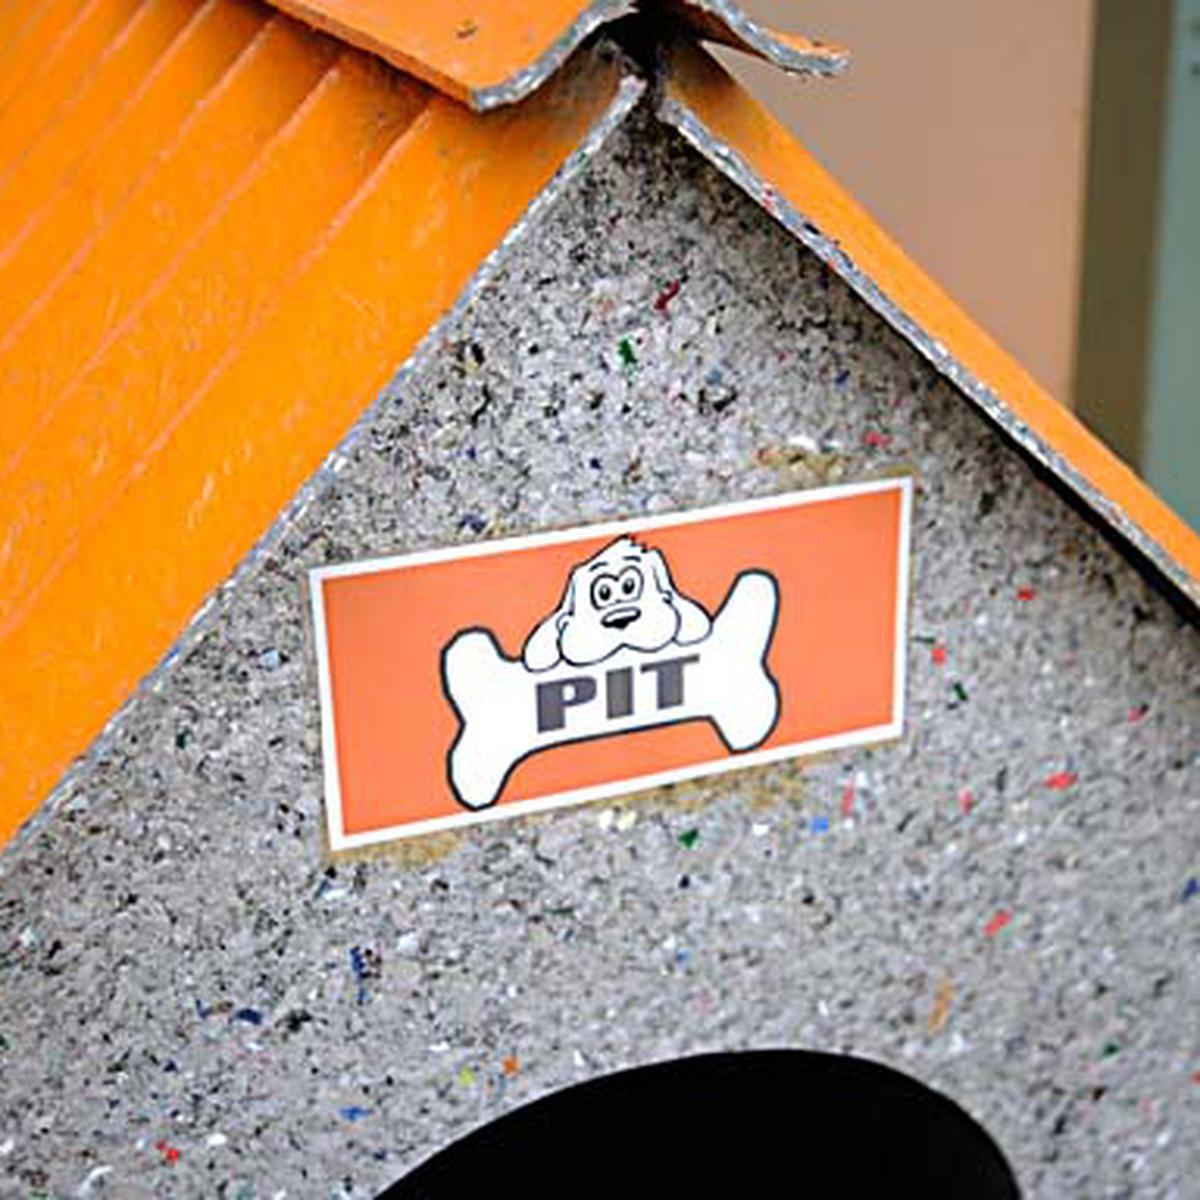 Surco recicla y fabrica casas para perros | WUF | EL COMERCIO PERÚ